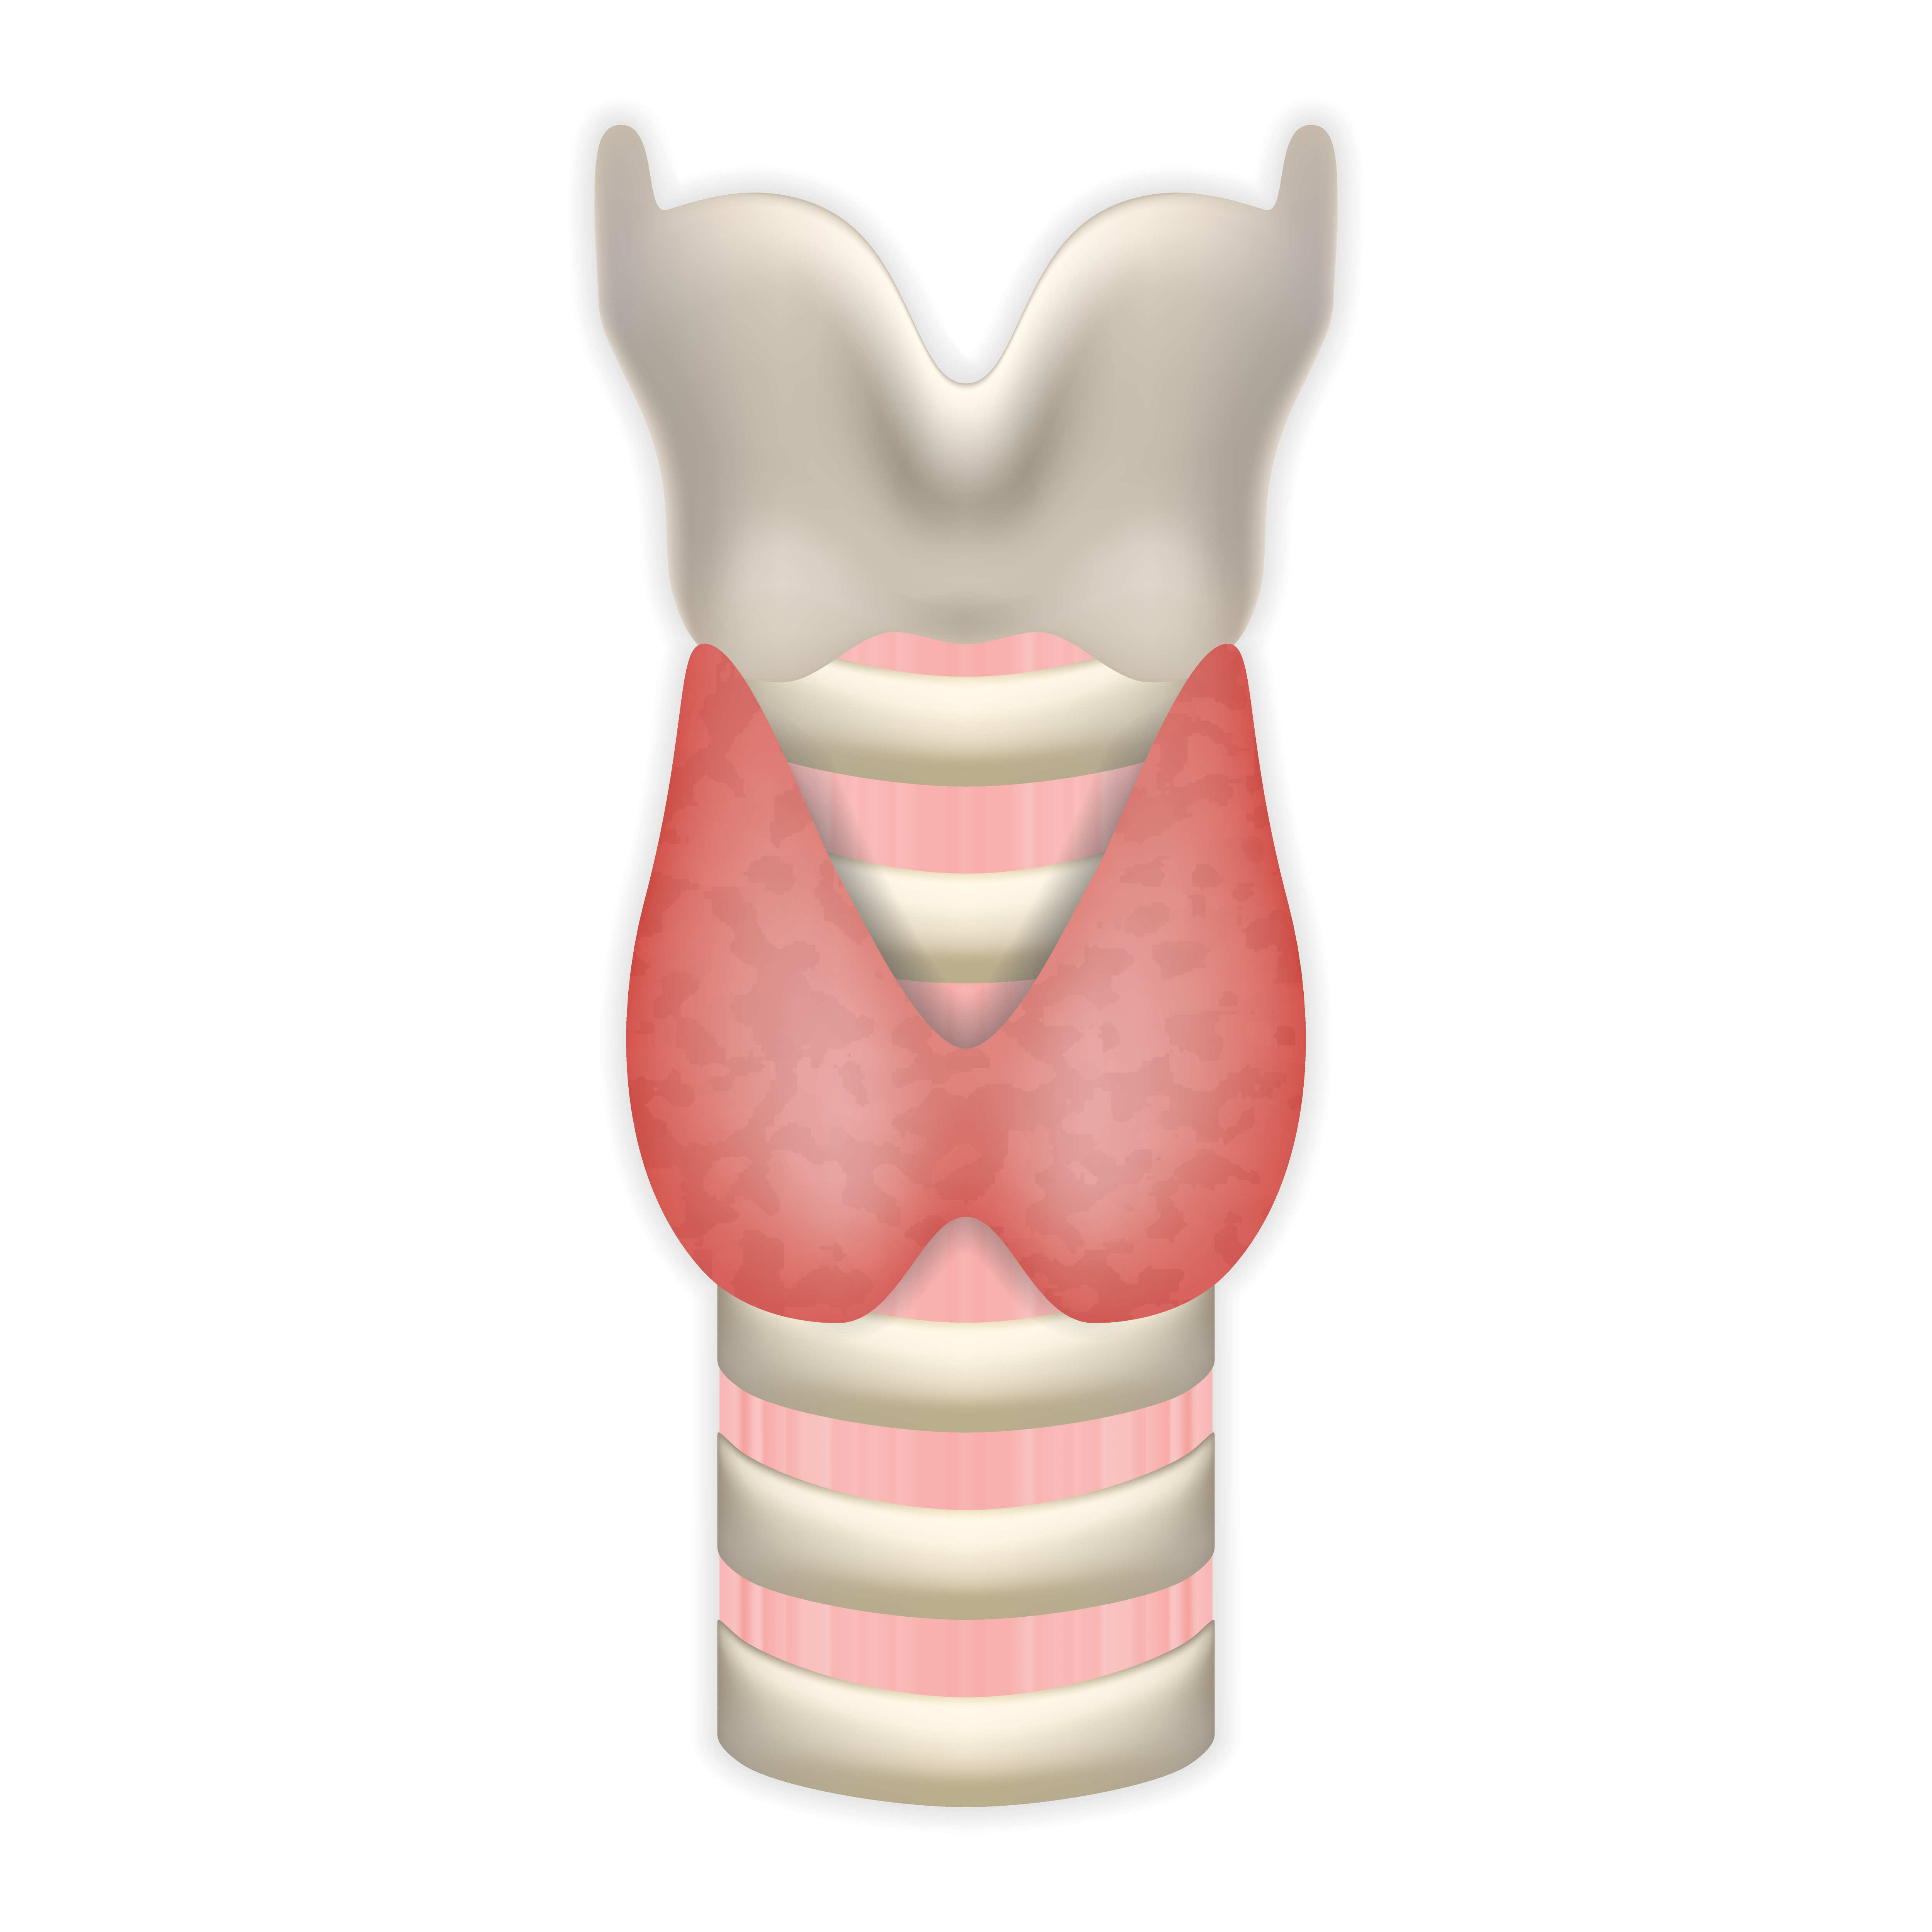 Nodulii tiroidieni